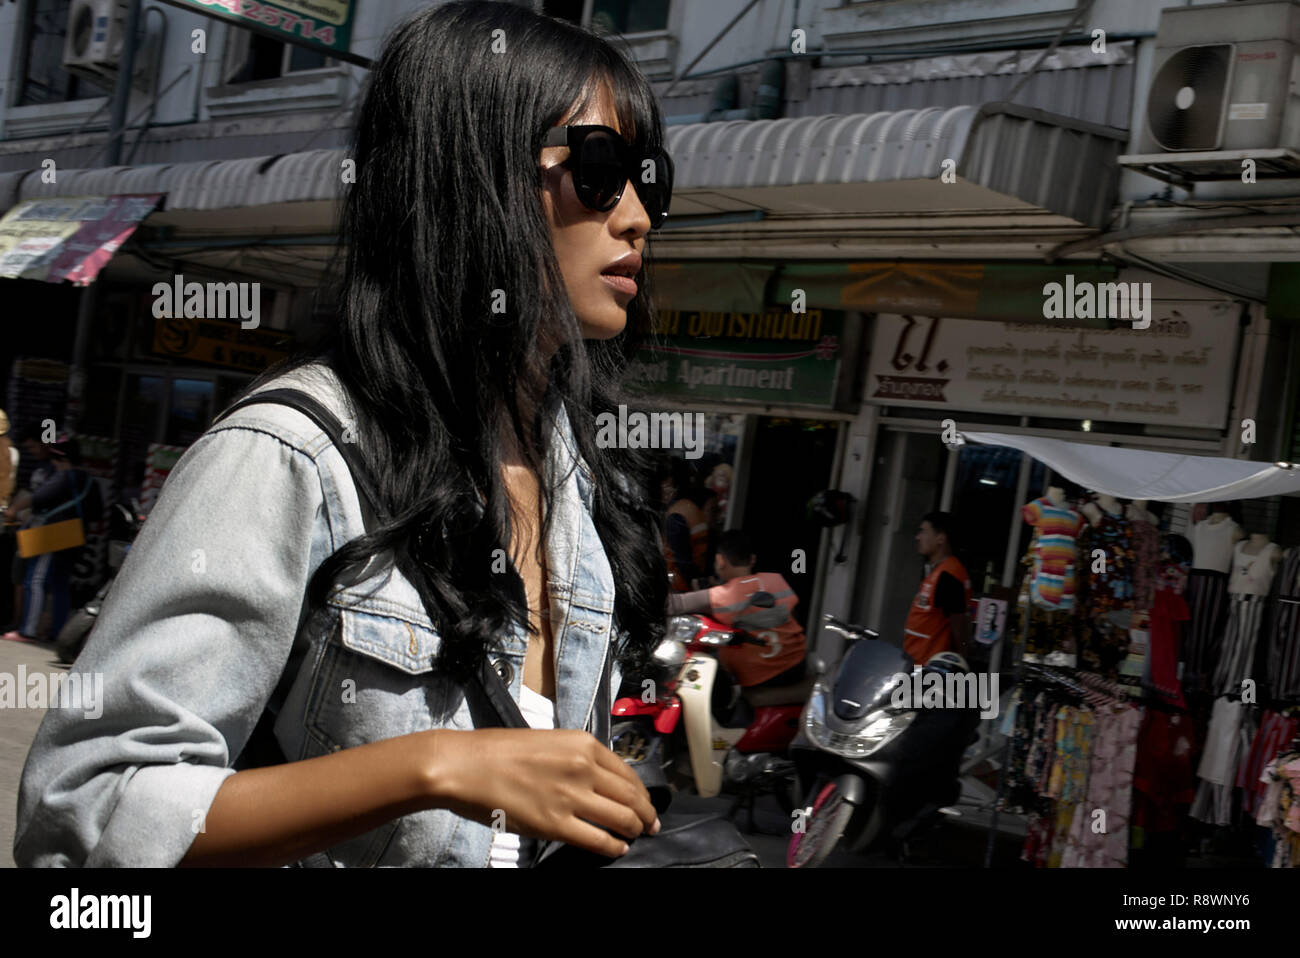 Thailändische Schönheit Fotos Und Bildmaterial In Hoher Auflösung Alamy